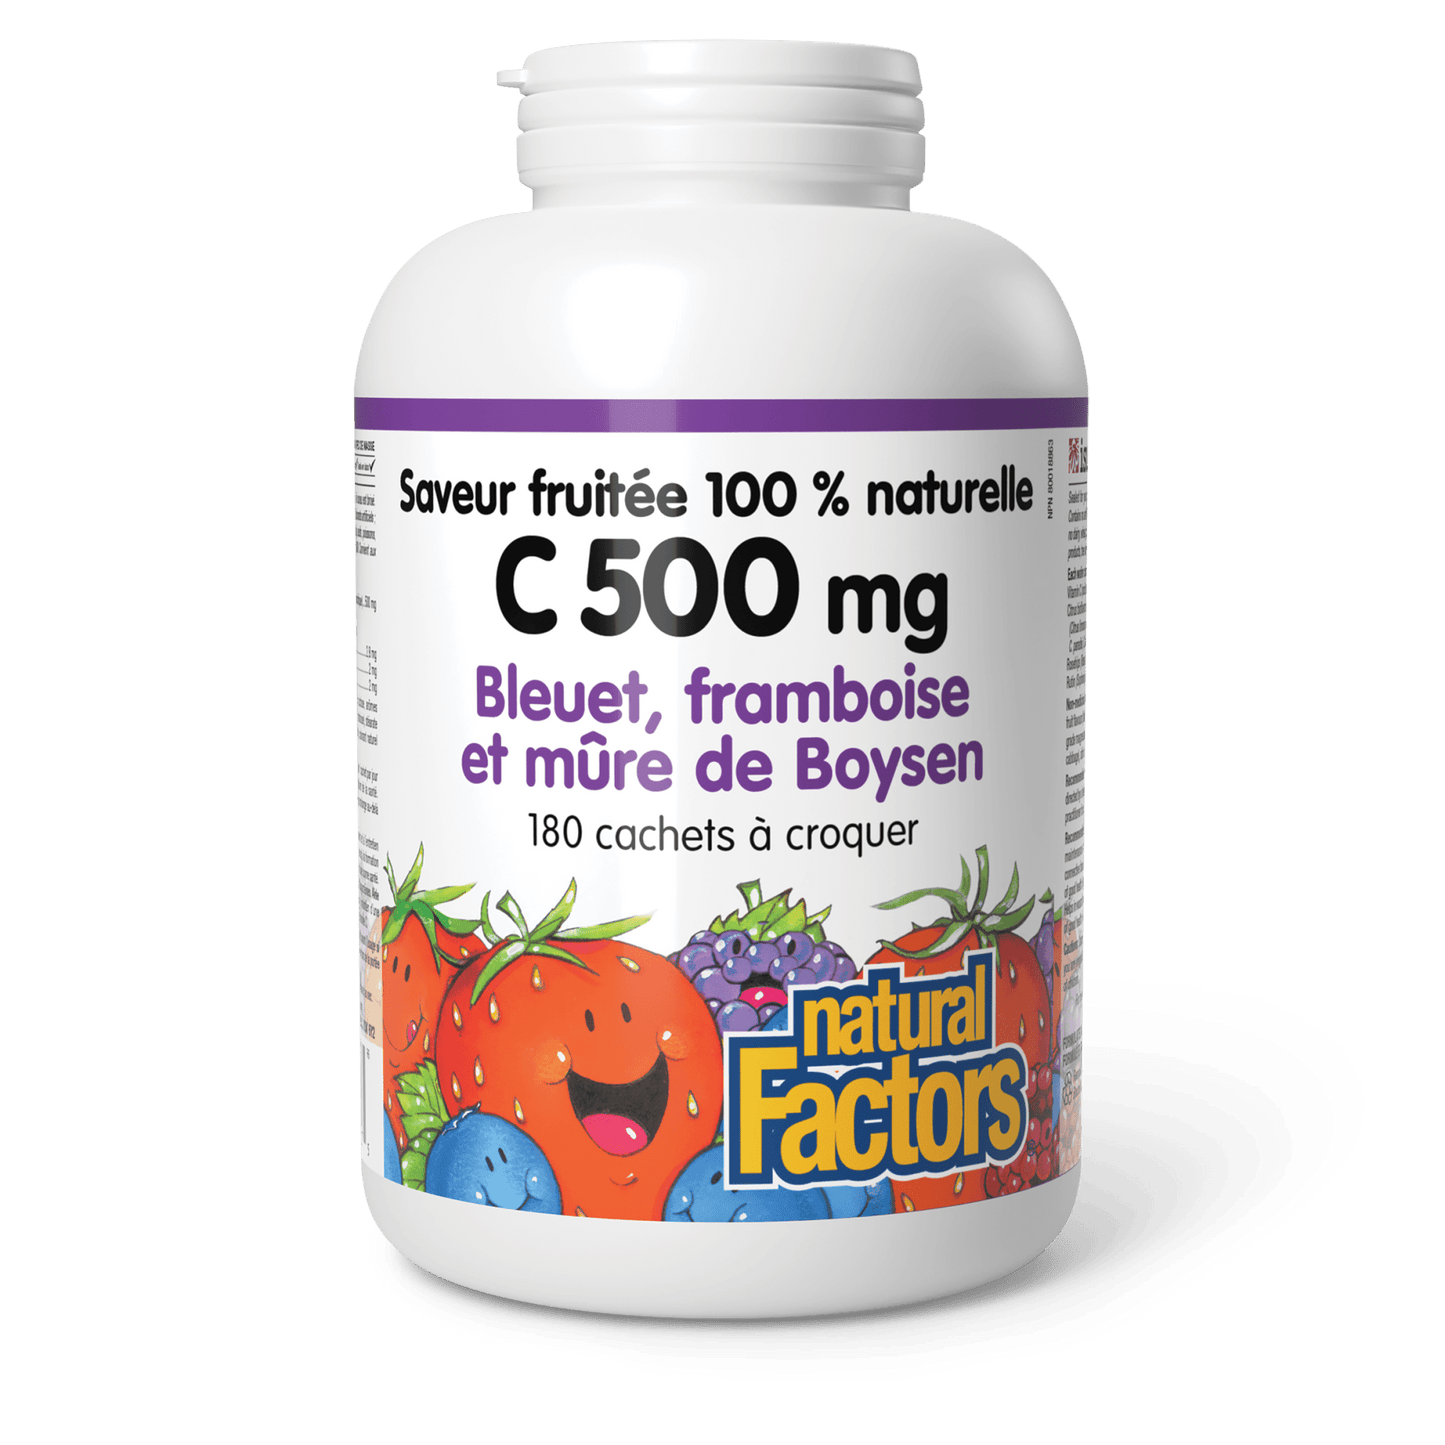 C 500 mg saveur fruitée 100 % naturelle, bleuet, framboise et mûre de Boysen, Natural Factors|v|image|1327